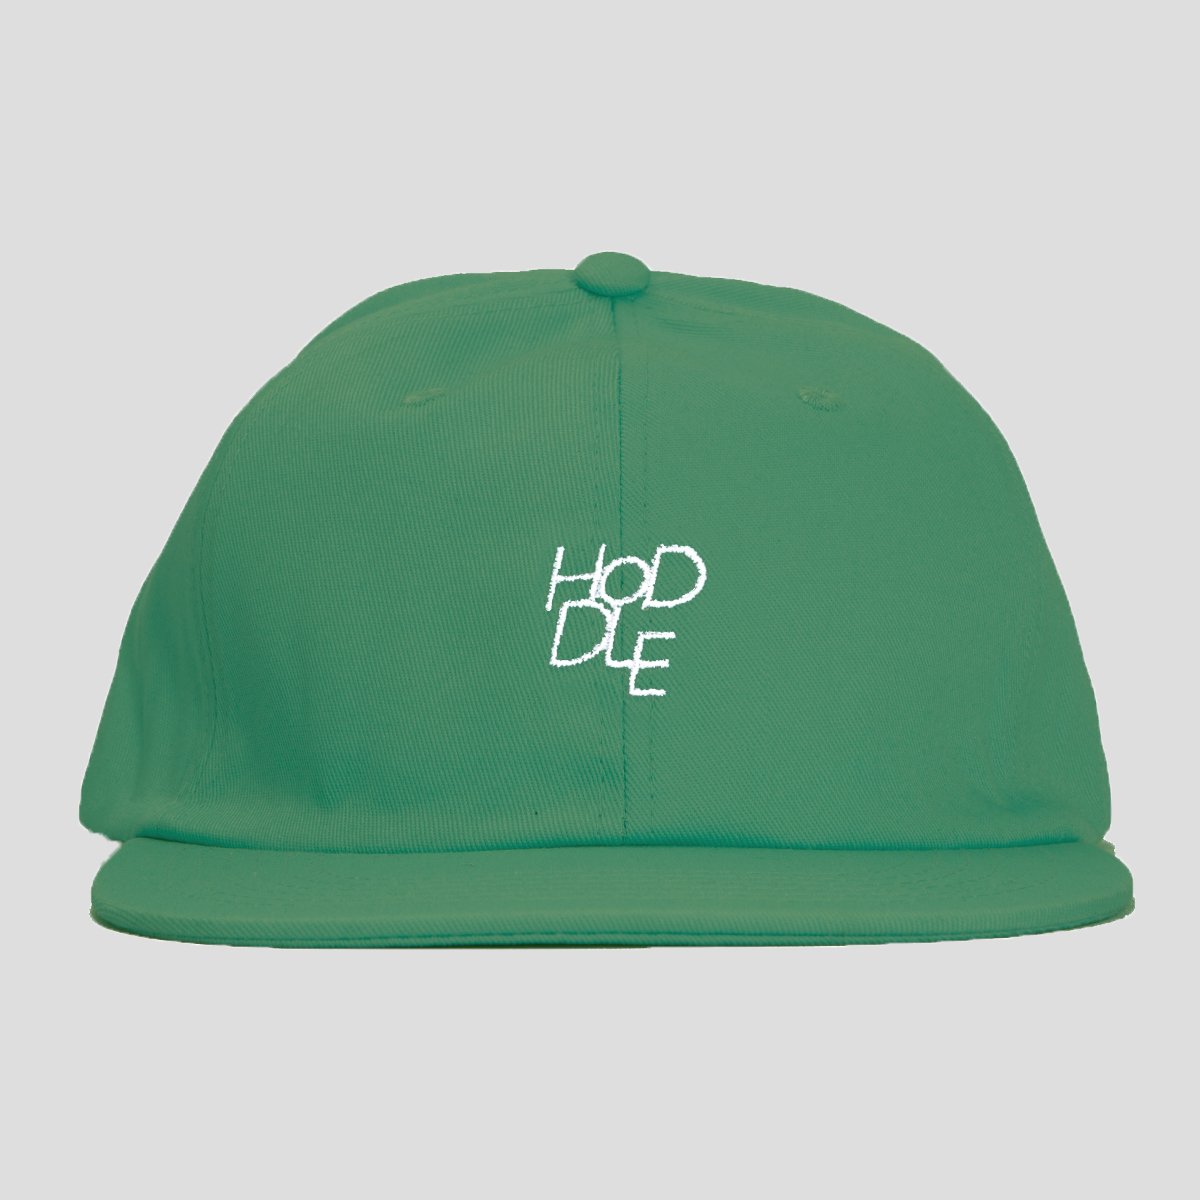 HODDLE "LOGO" CAP GREEN